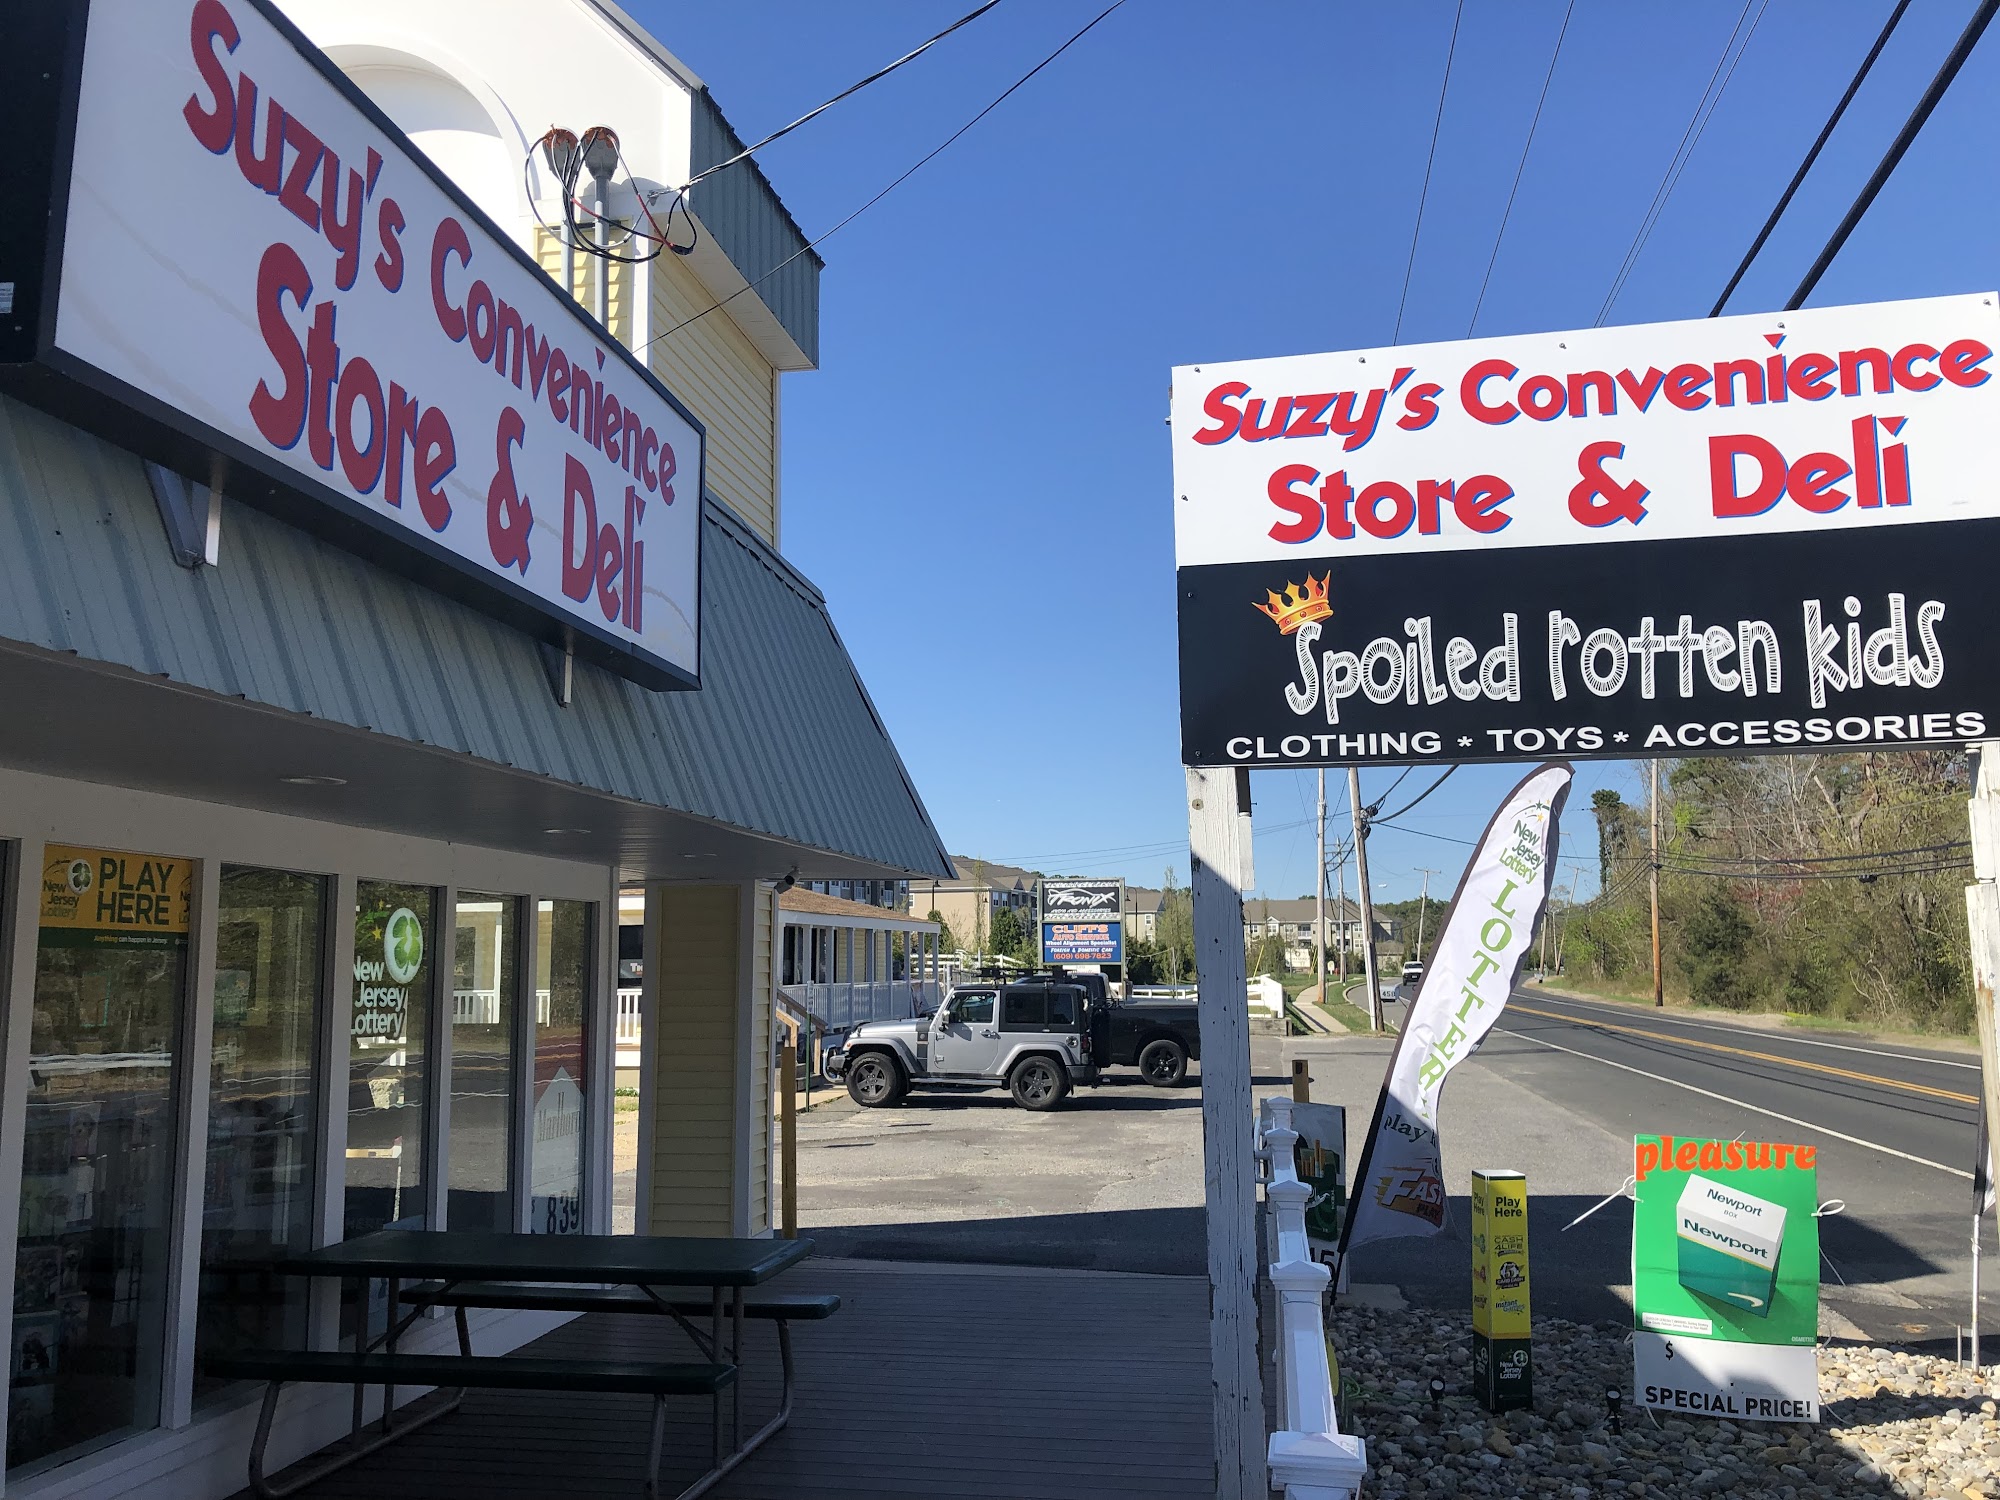 Suzy's Convenience Store & Deli